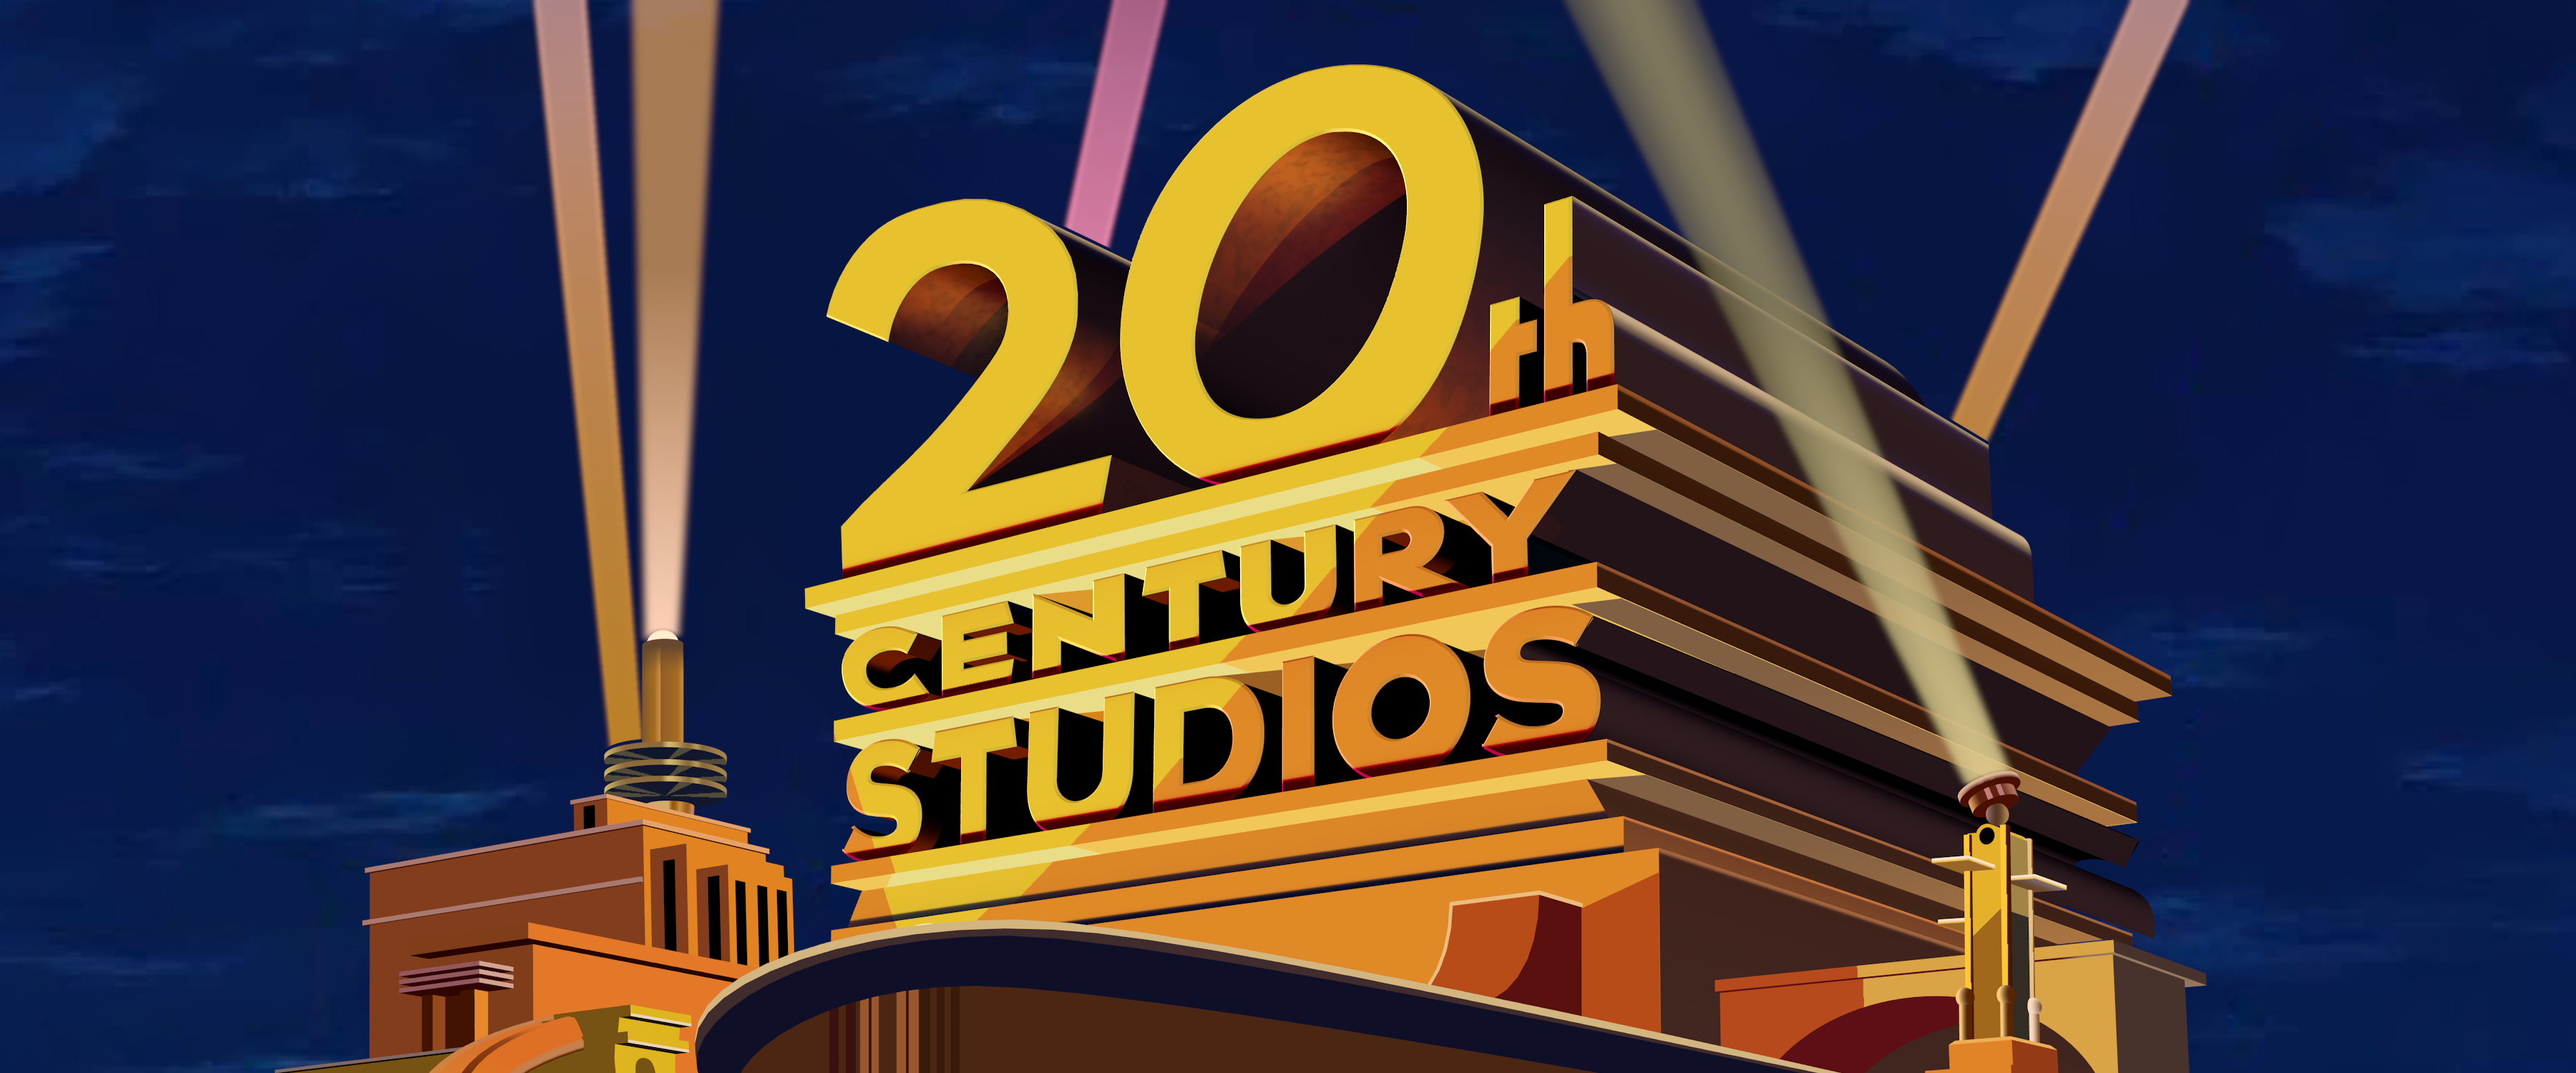 Your Dream Variations - 20th Century Studios